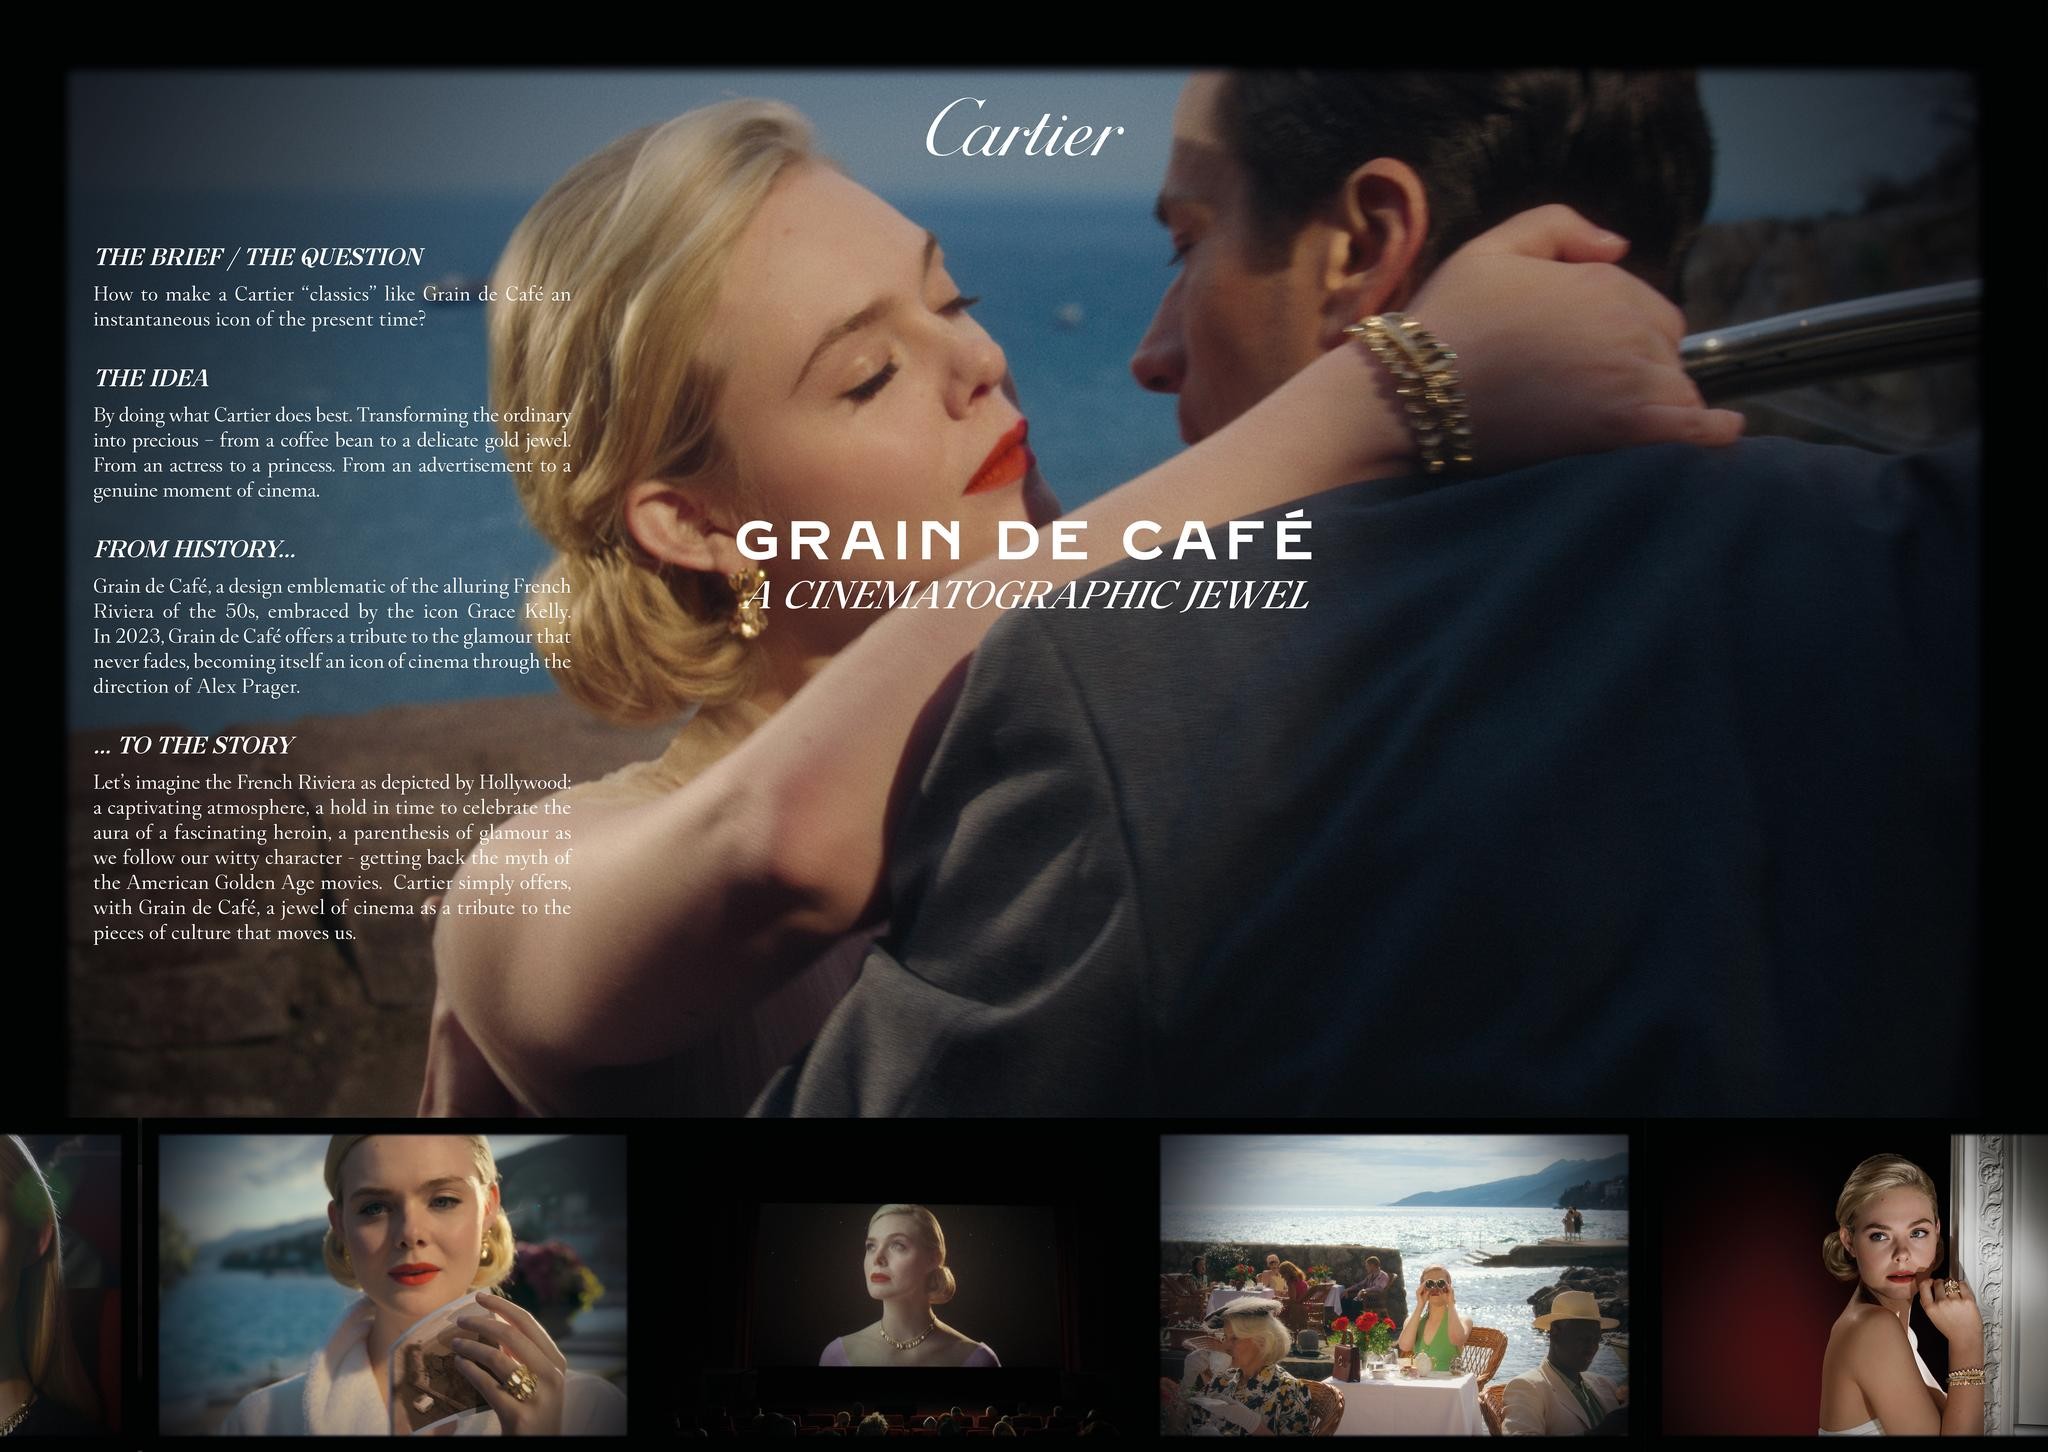 Cartier Grain de Café